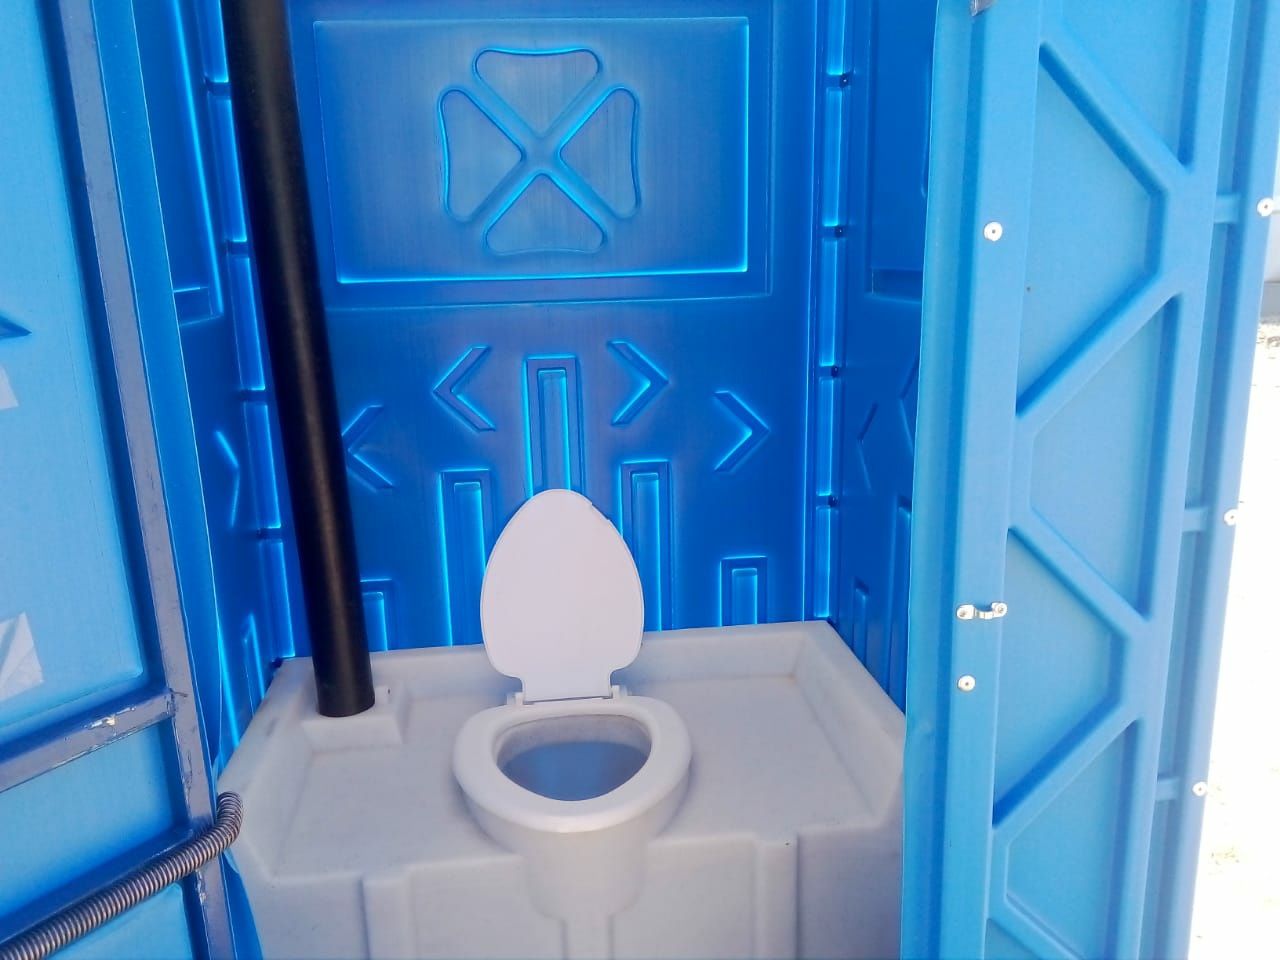 Биотуалет Туалет кабина мобильный